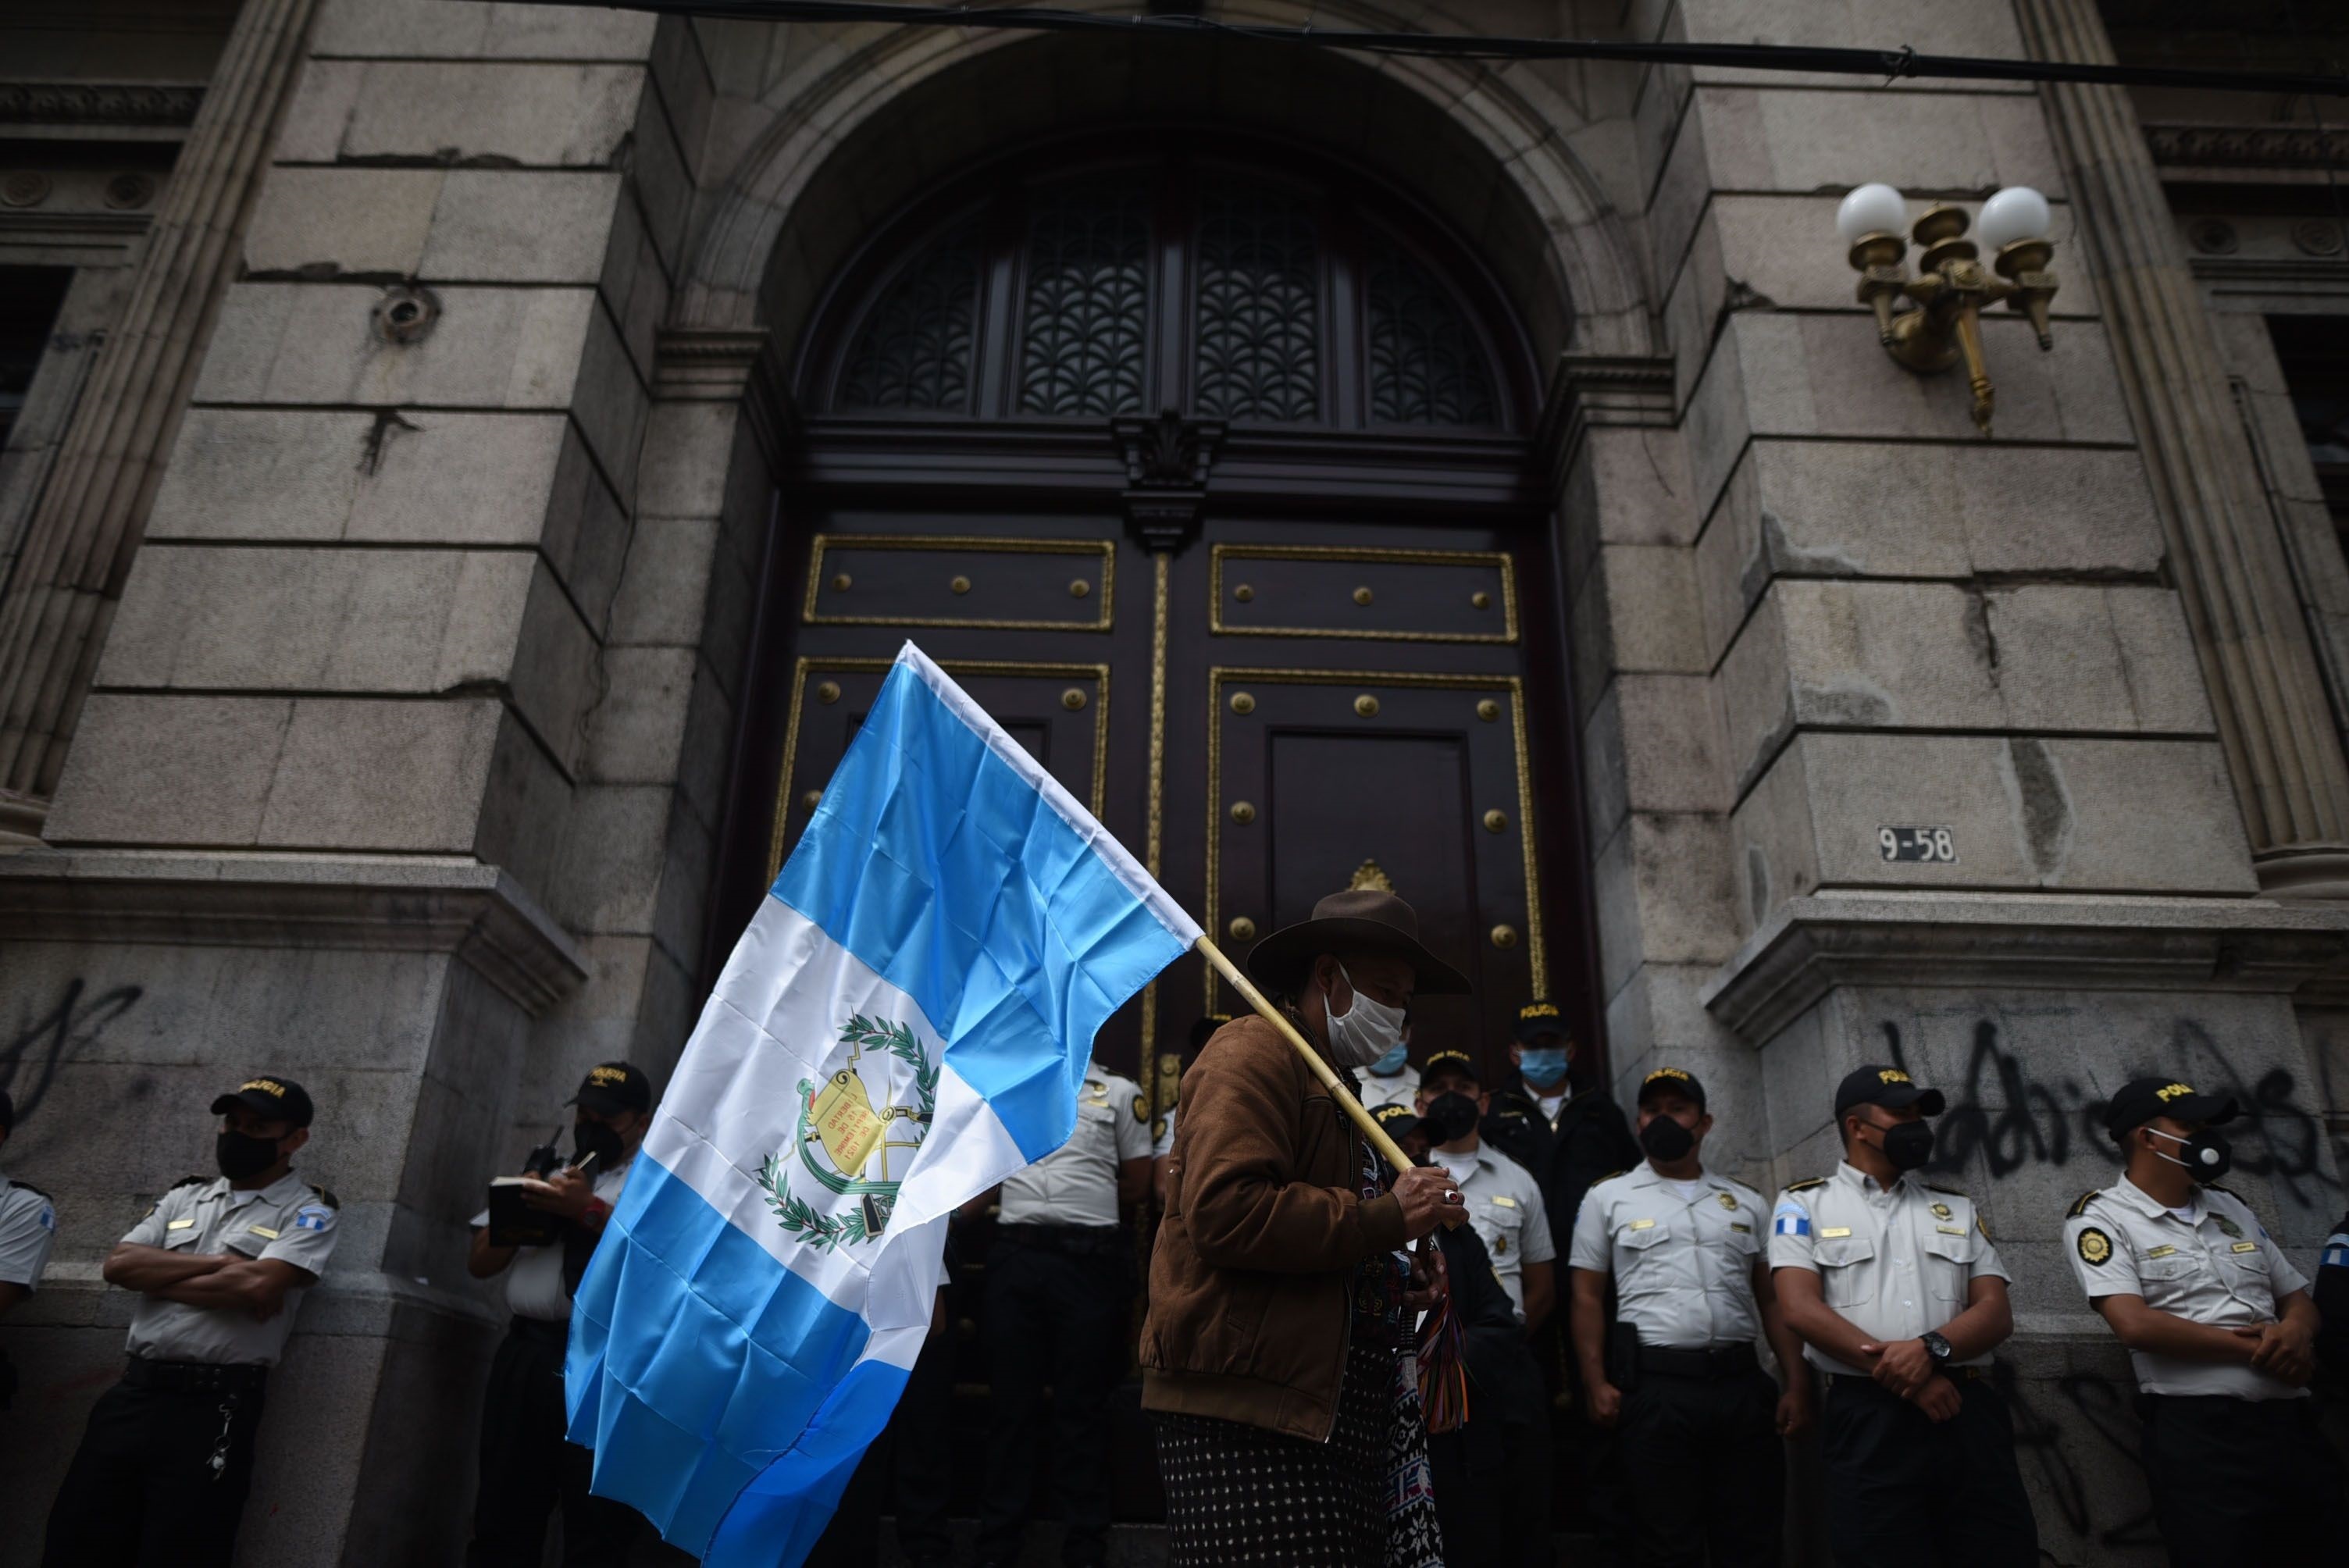 Autoridades ind�genas de Guatemala se manifiesta en contra del presidente del pa�s, Alejandro Giammattei, y le advierten que tienen la capacidad de paralizar el pa�s, el 24 de noviembre de 2020 en Ciudad de Guatemala (Guatemala). EFE/Edwin Berc�an/Archivo
